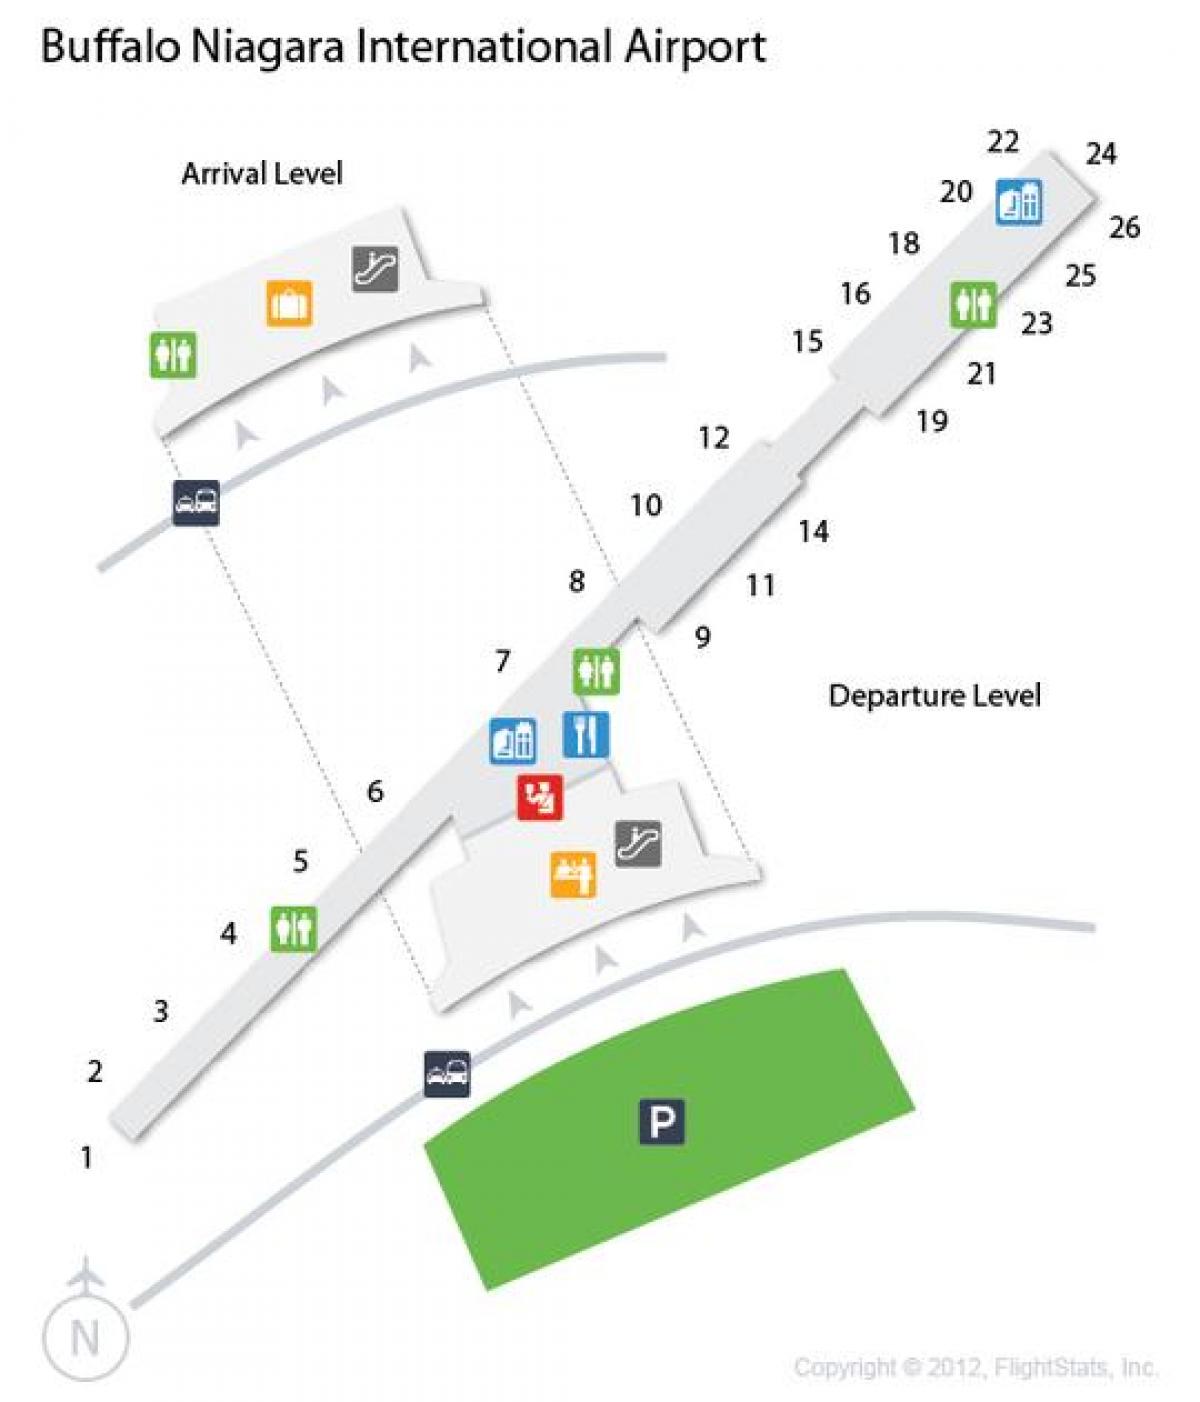 नक्शे की भैंस नियाग्रा हवाई अड्डे के प्रस्थान के स्तर